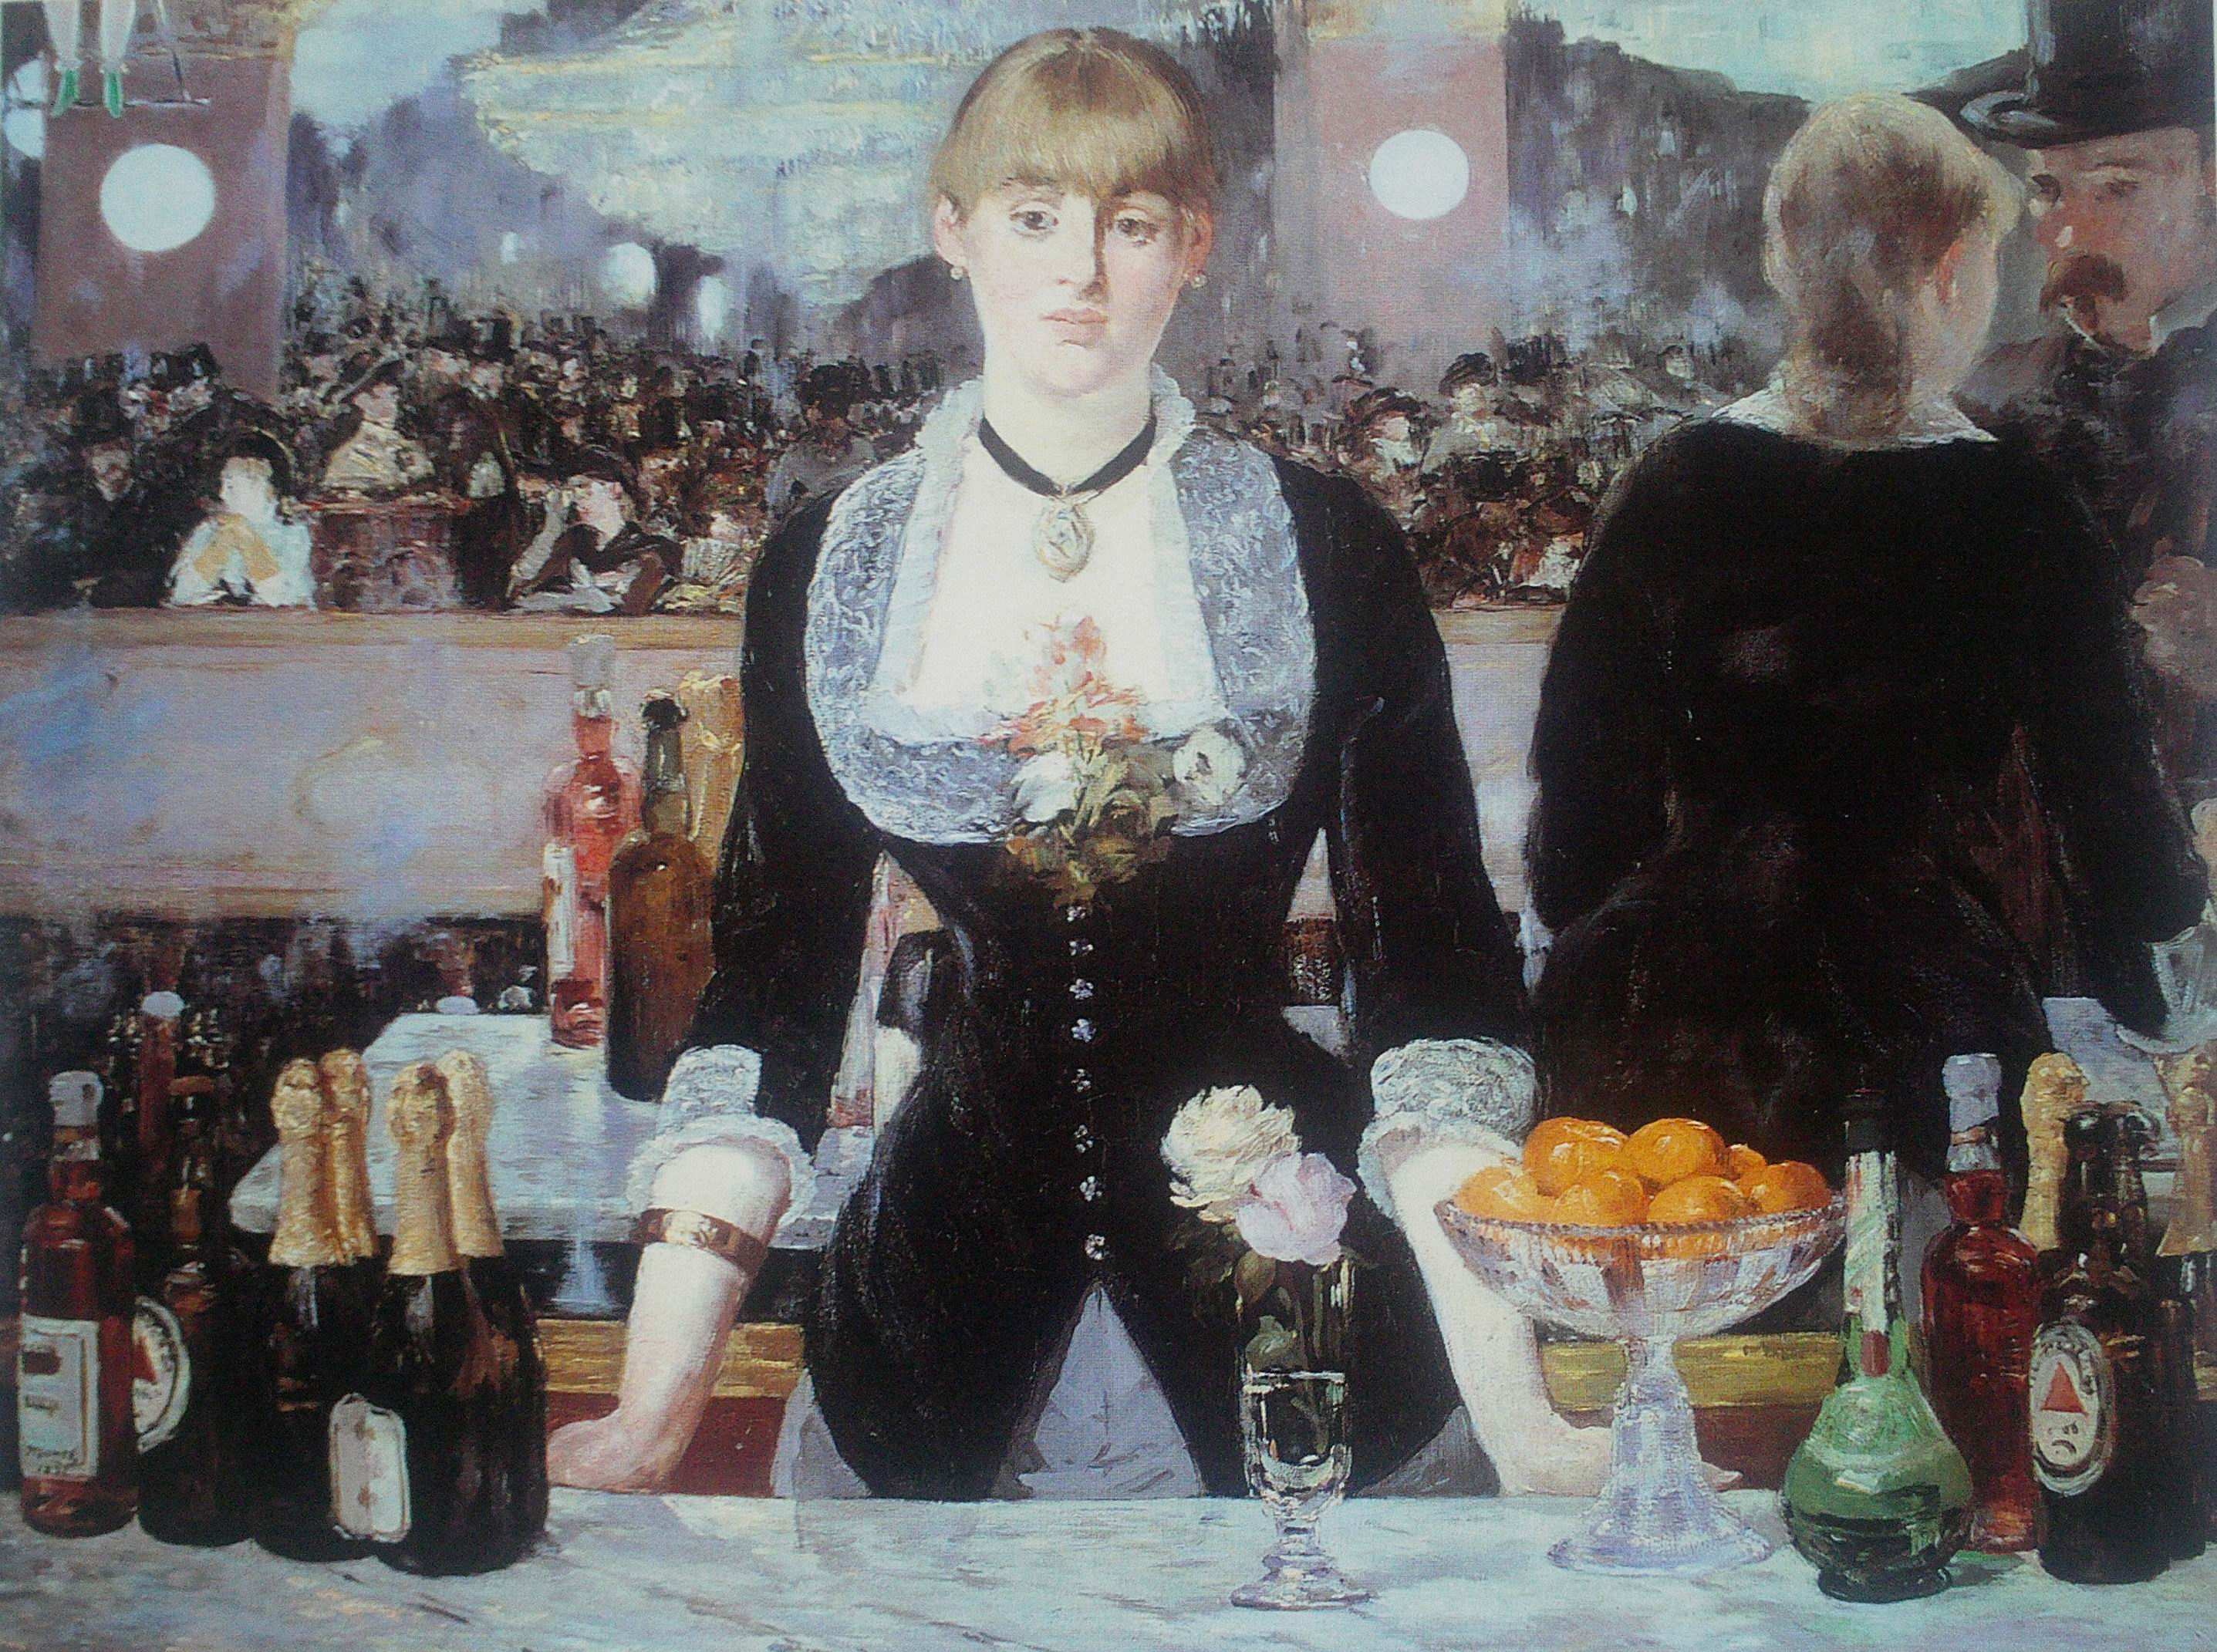 Τίτλος: Το µπαρ του Folie-Bergere Καλλιτέχνης: Μανέ Χρονολογία: 1882 Στιλιστική περιγραφή: Αυτός ο πίνακας θα µπορούσε να περιγραφεί ως ένα παιχνίδι φωτός και αντανακλάσεων του πάνω στο γυαλί.